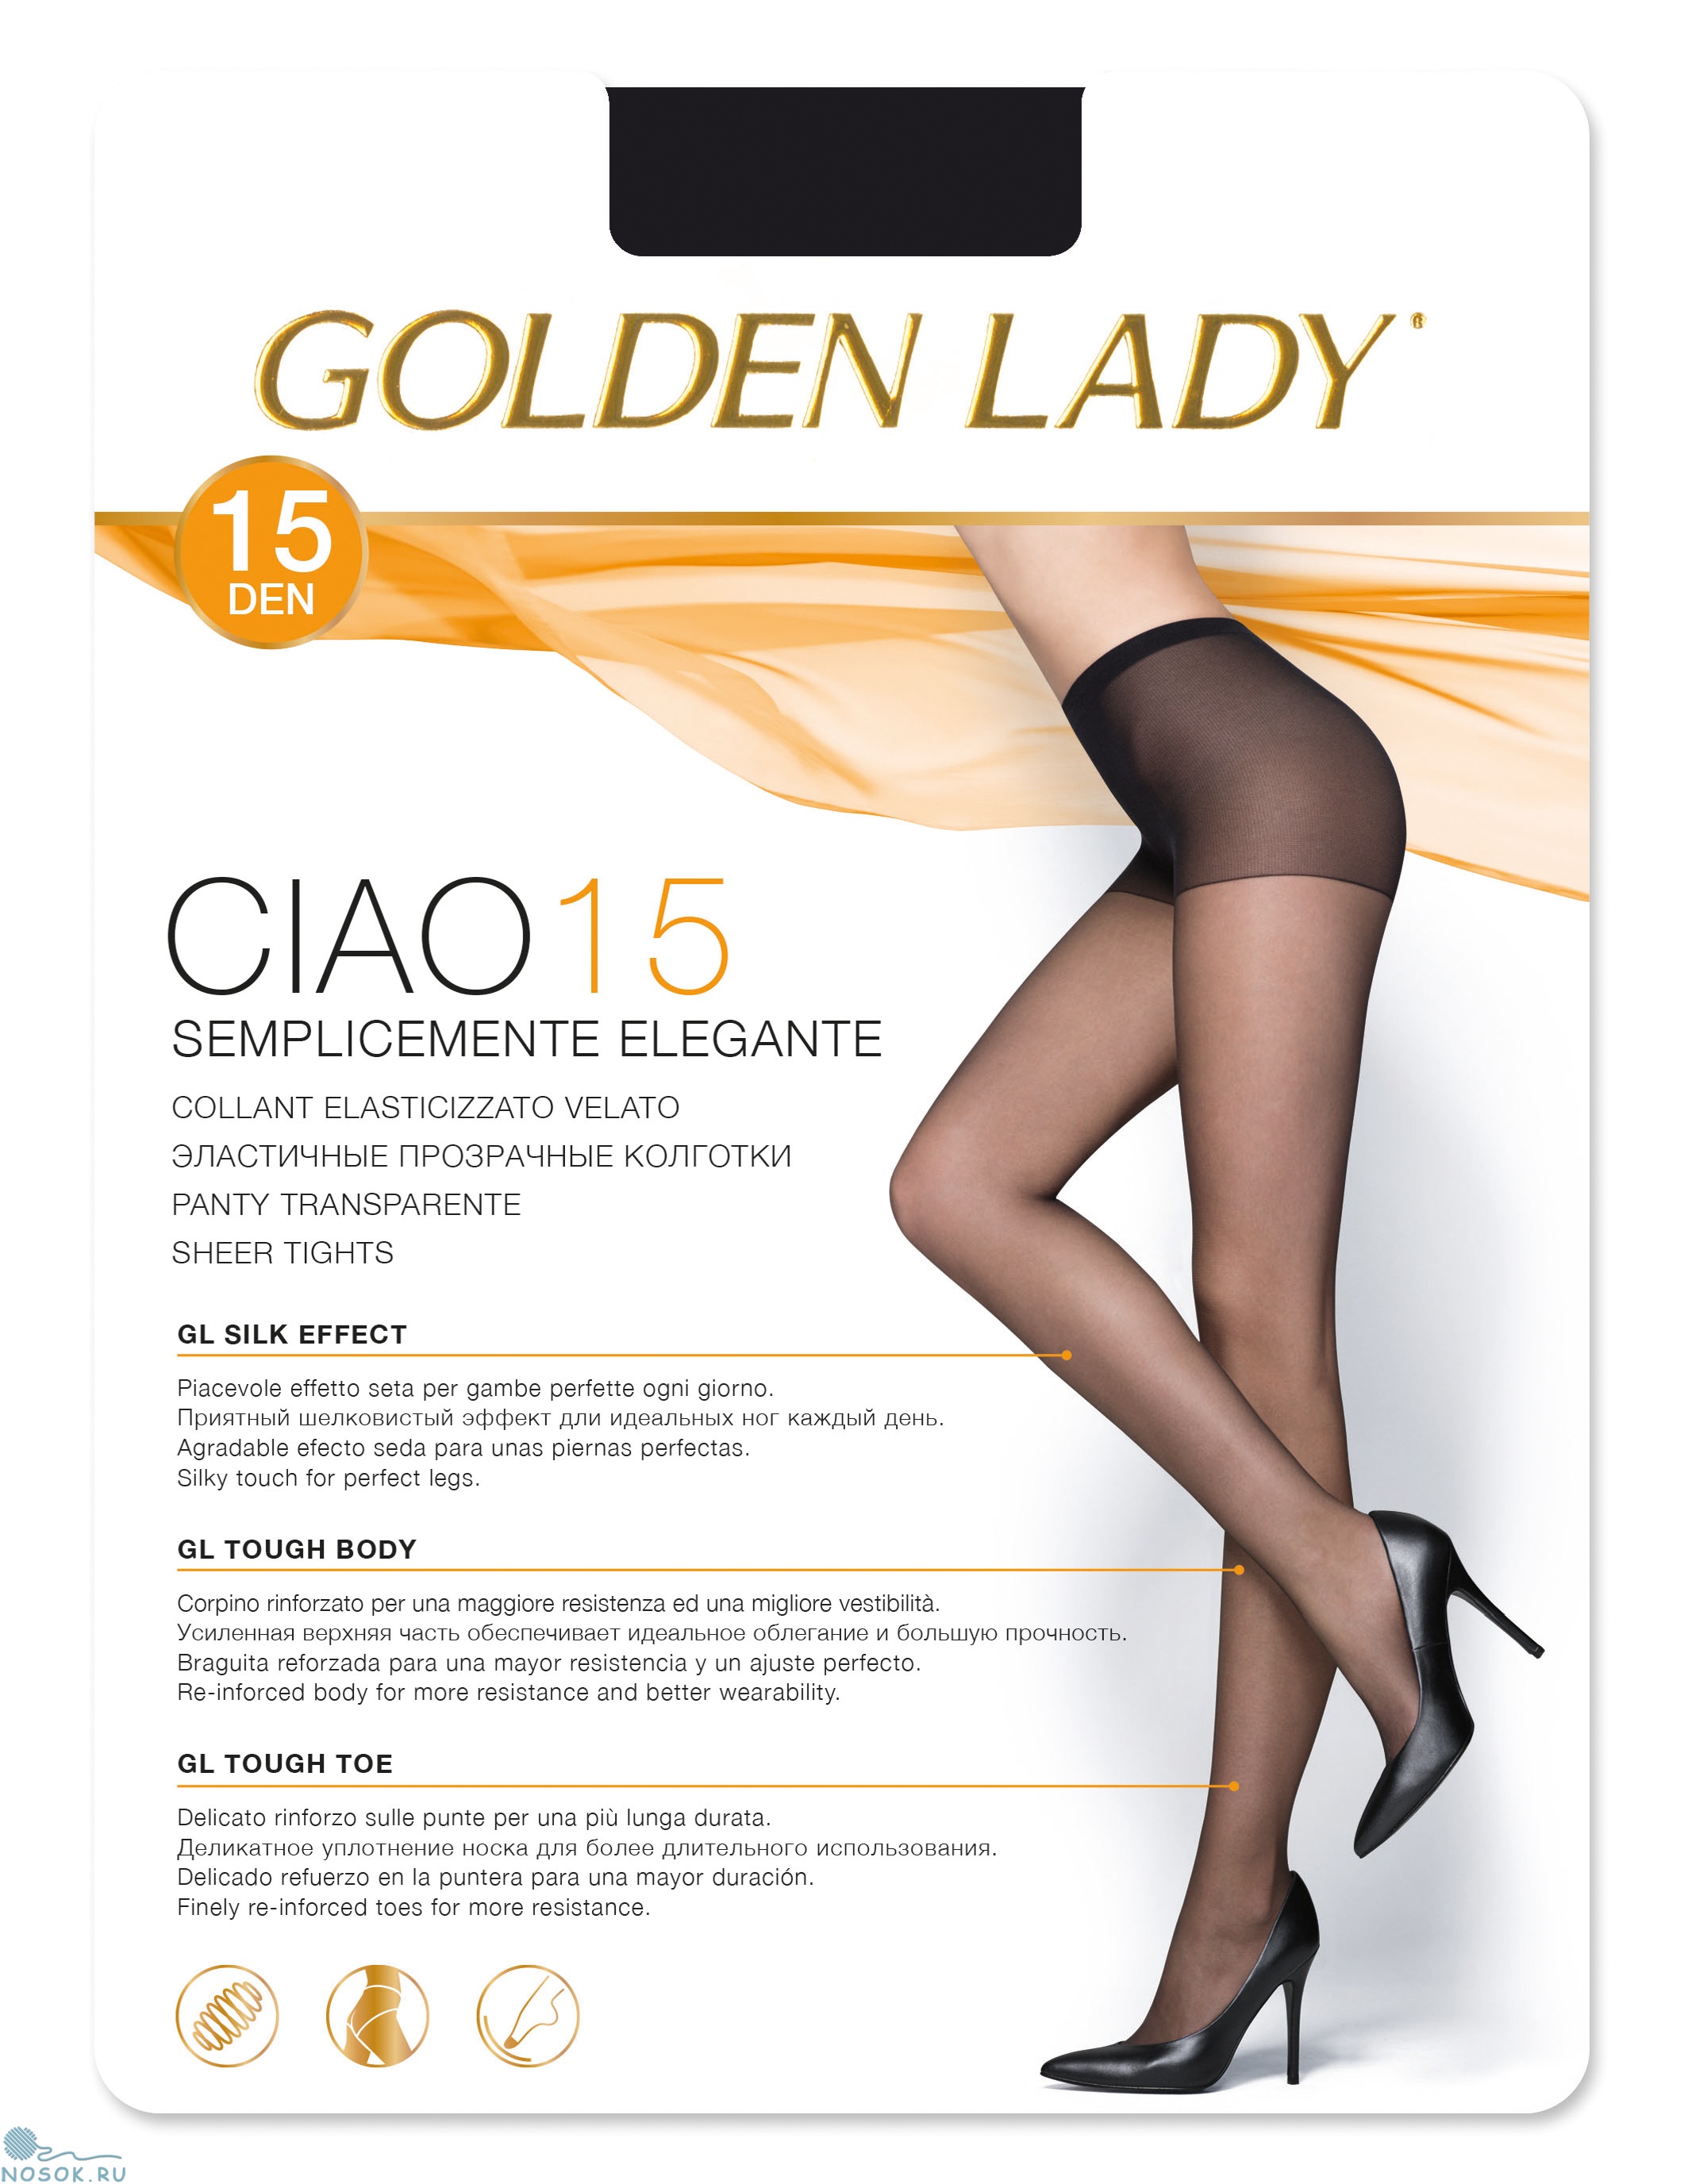 Golden Lady Ciao 15, колготки